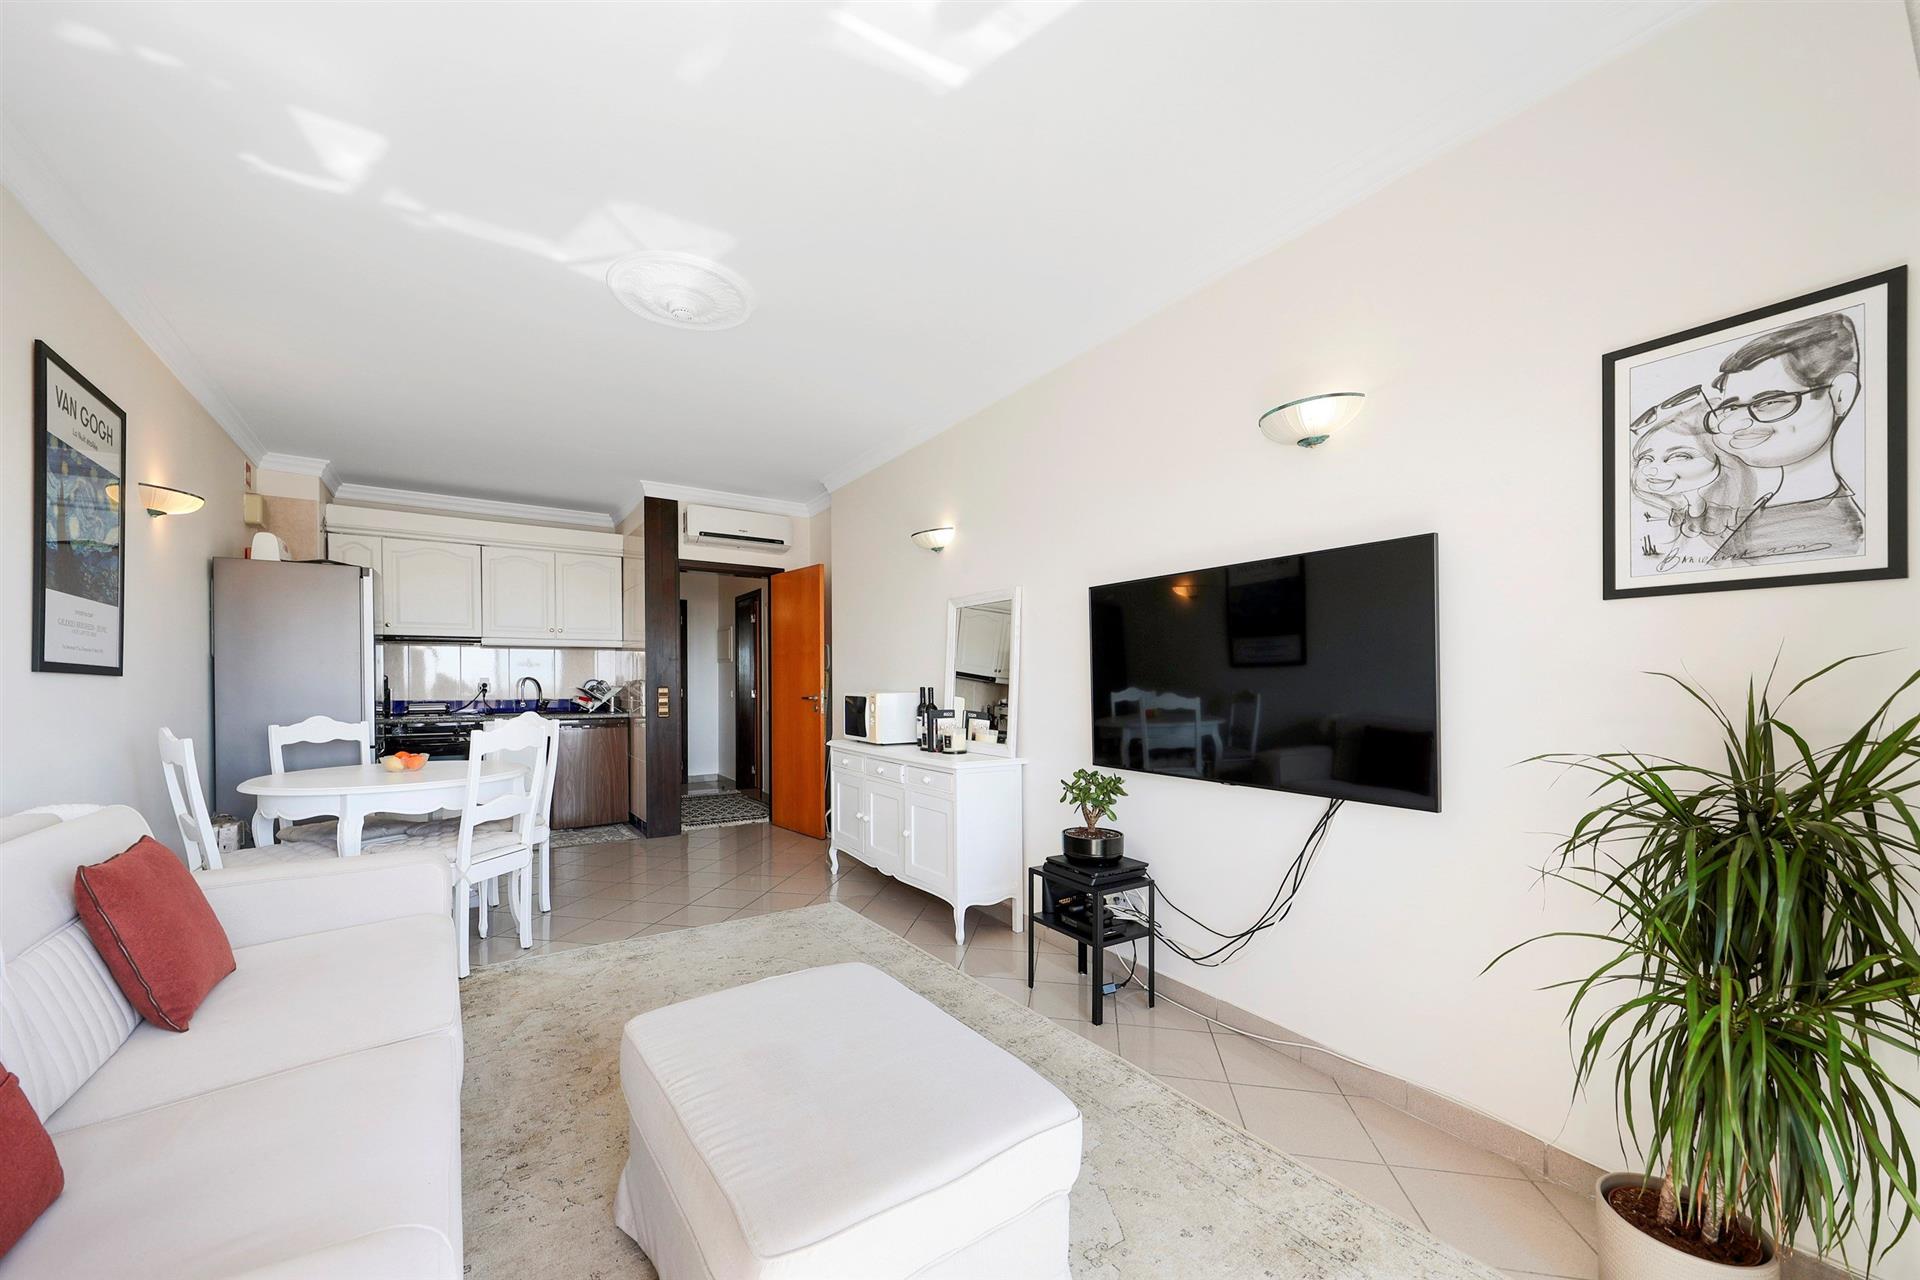 T1+1 appartement met privégarage, zwembad en zeezicht in Albufeira